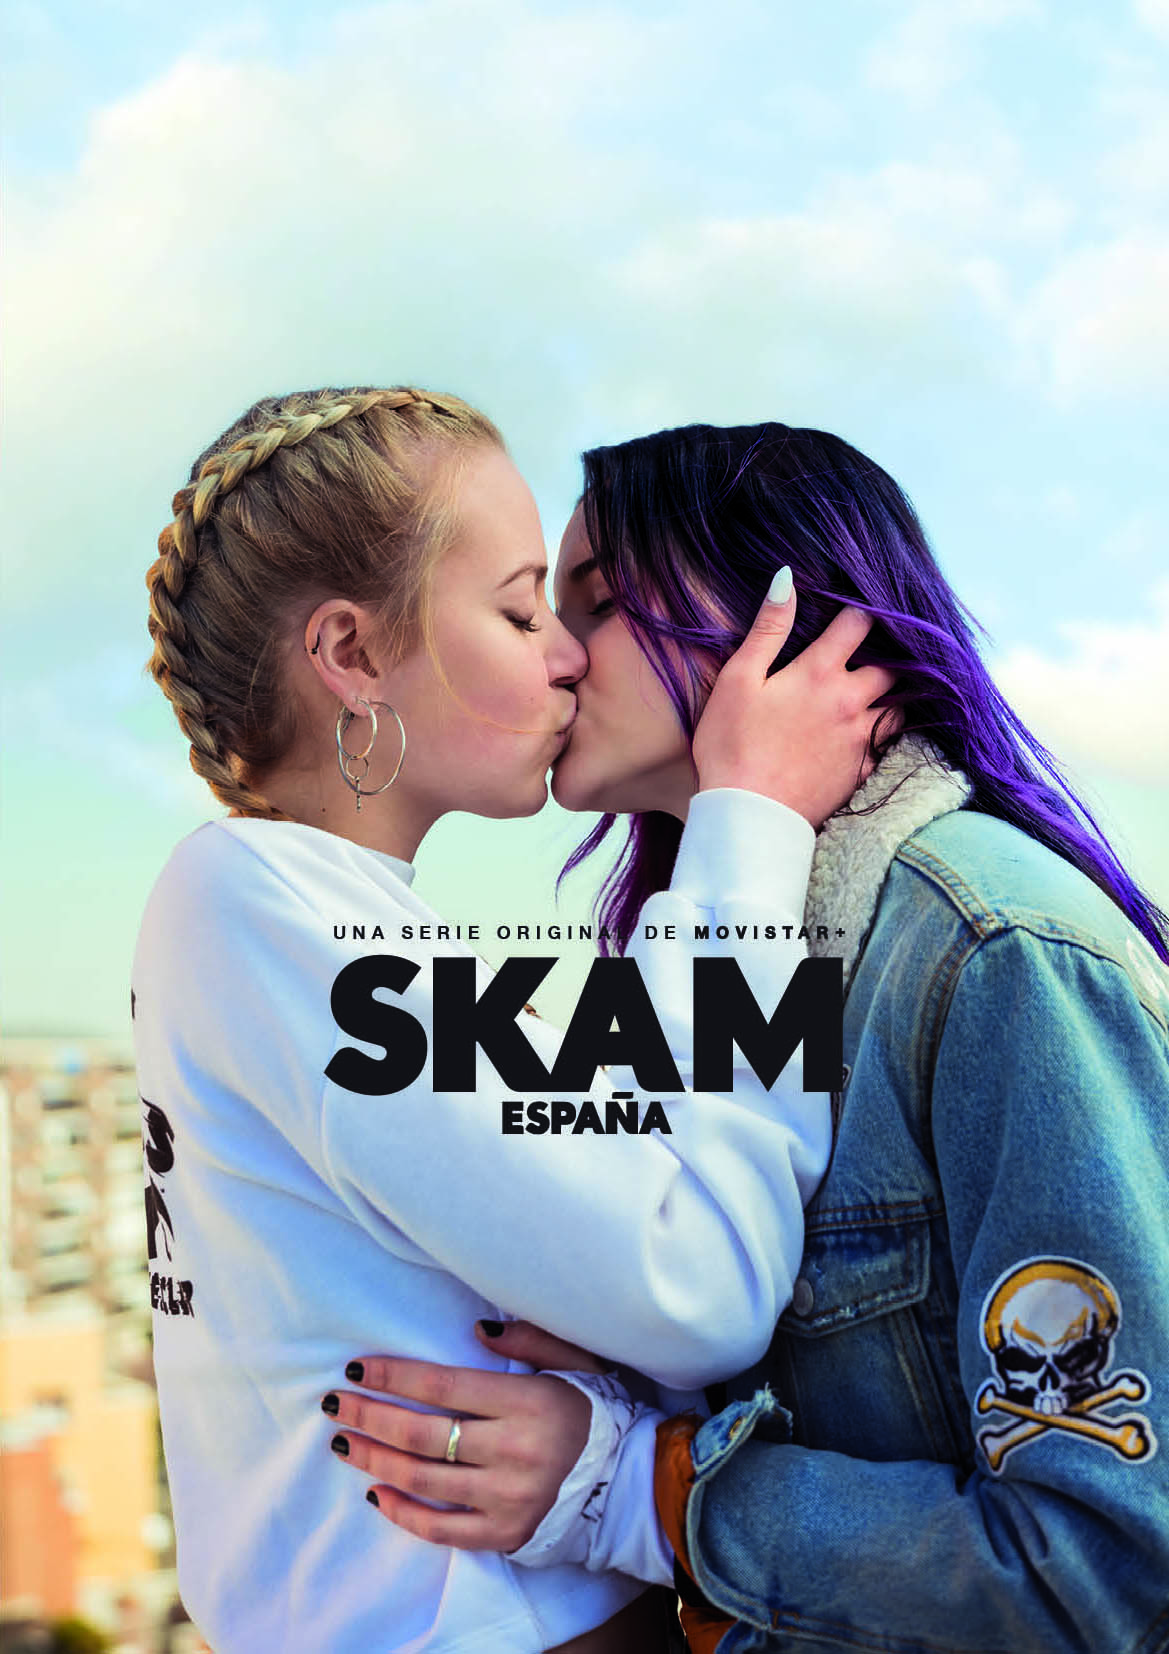 Una pareja gay, protagonista de 'SKAM España' en su segunda temporada